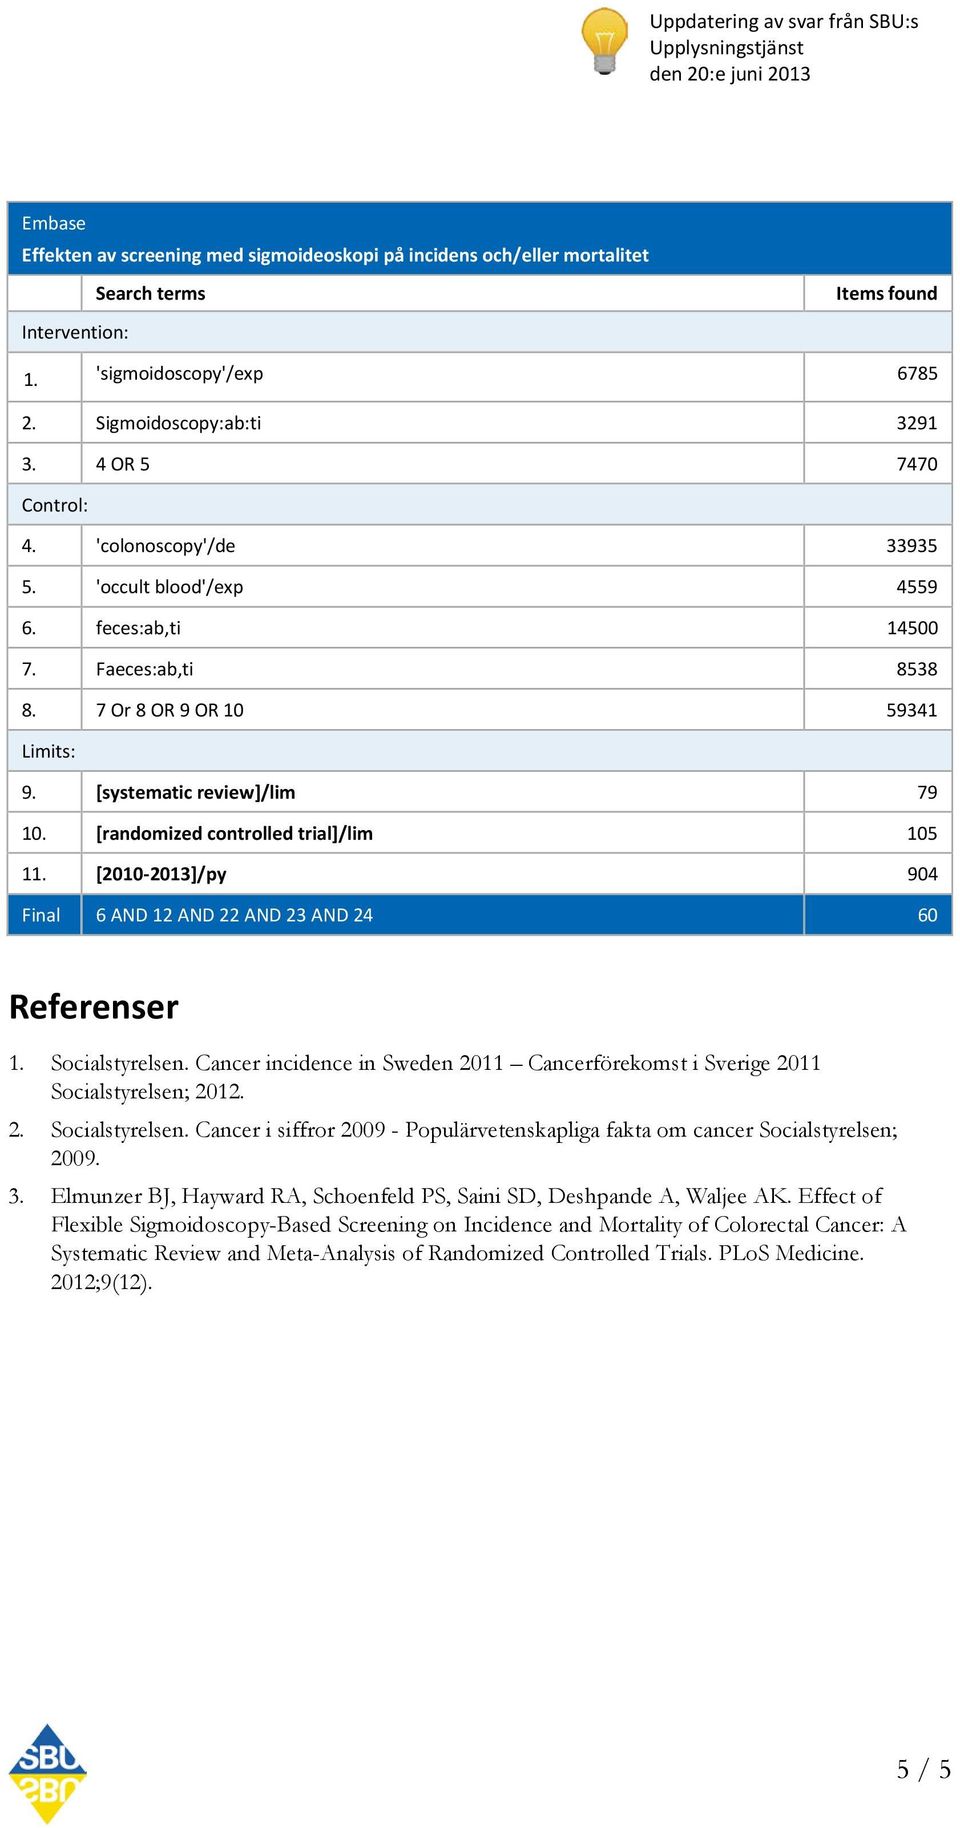 Cancer incidence in Sweden 2011 Cancerförekomst i Sverige 2011 Socialstyrelsen; 2012. 2. Socialstyrelsen. Cancer i siffror 2009 - Populärvetenskapliga fakta om cancer Socialstyrelsen; 2009. 3.